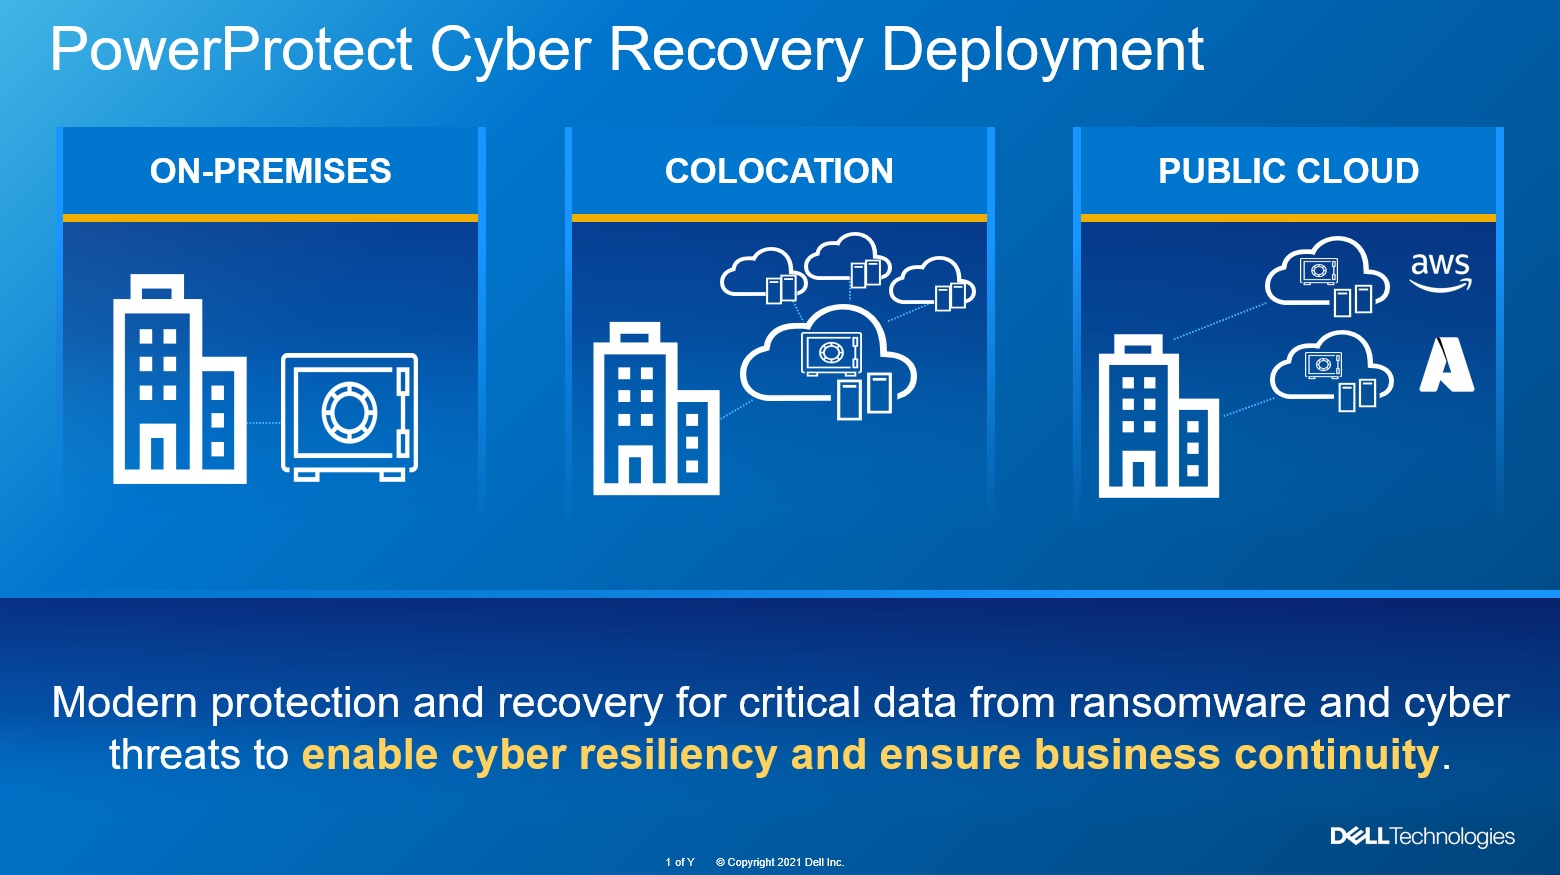 透過 Dell PowerProtect Cyber Recovery 能確保企業資料固定儲存在專屬的網路存放庫中，萬一被黑客勒索，也能讓企業即時安全無虞取出備份資料，輕易恢復正常的業務運作。